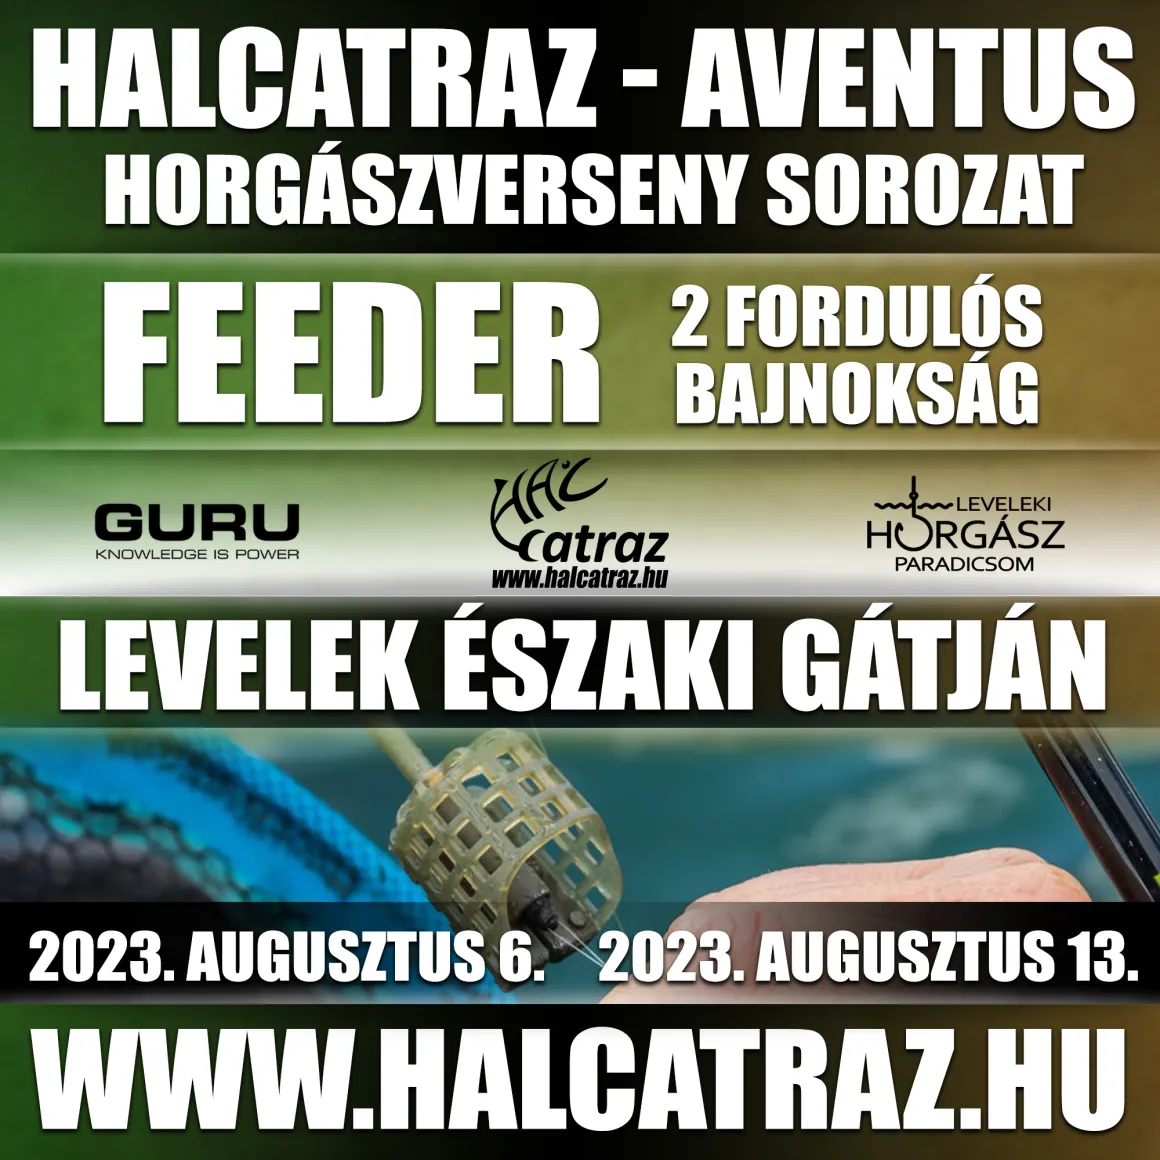 halcatrazversenysorozat feeder 2